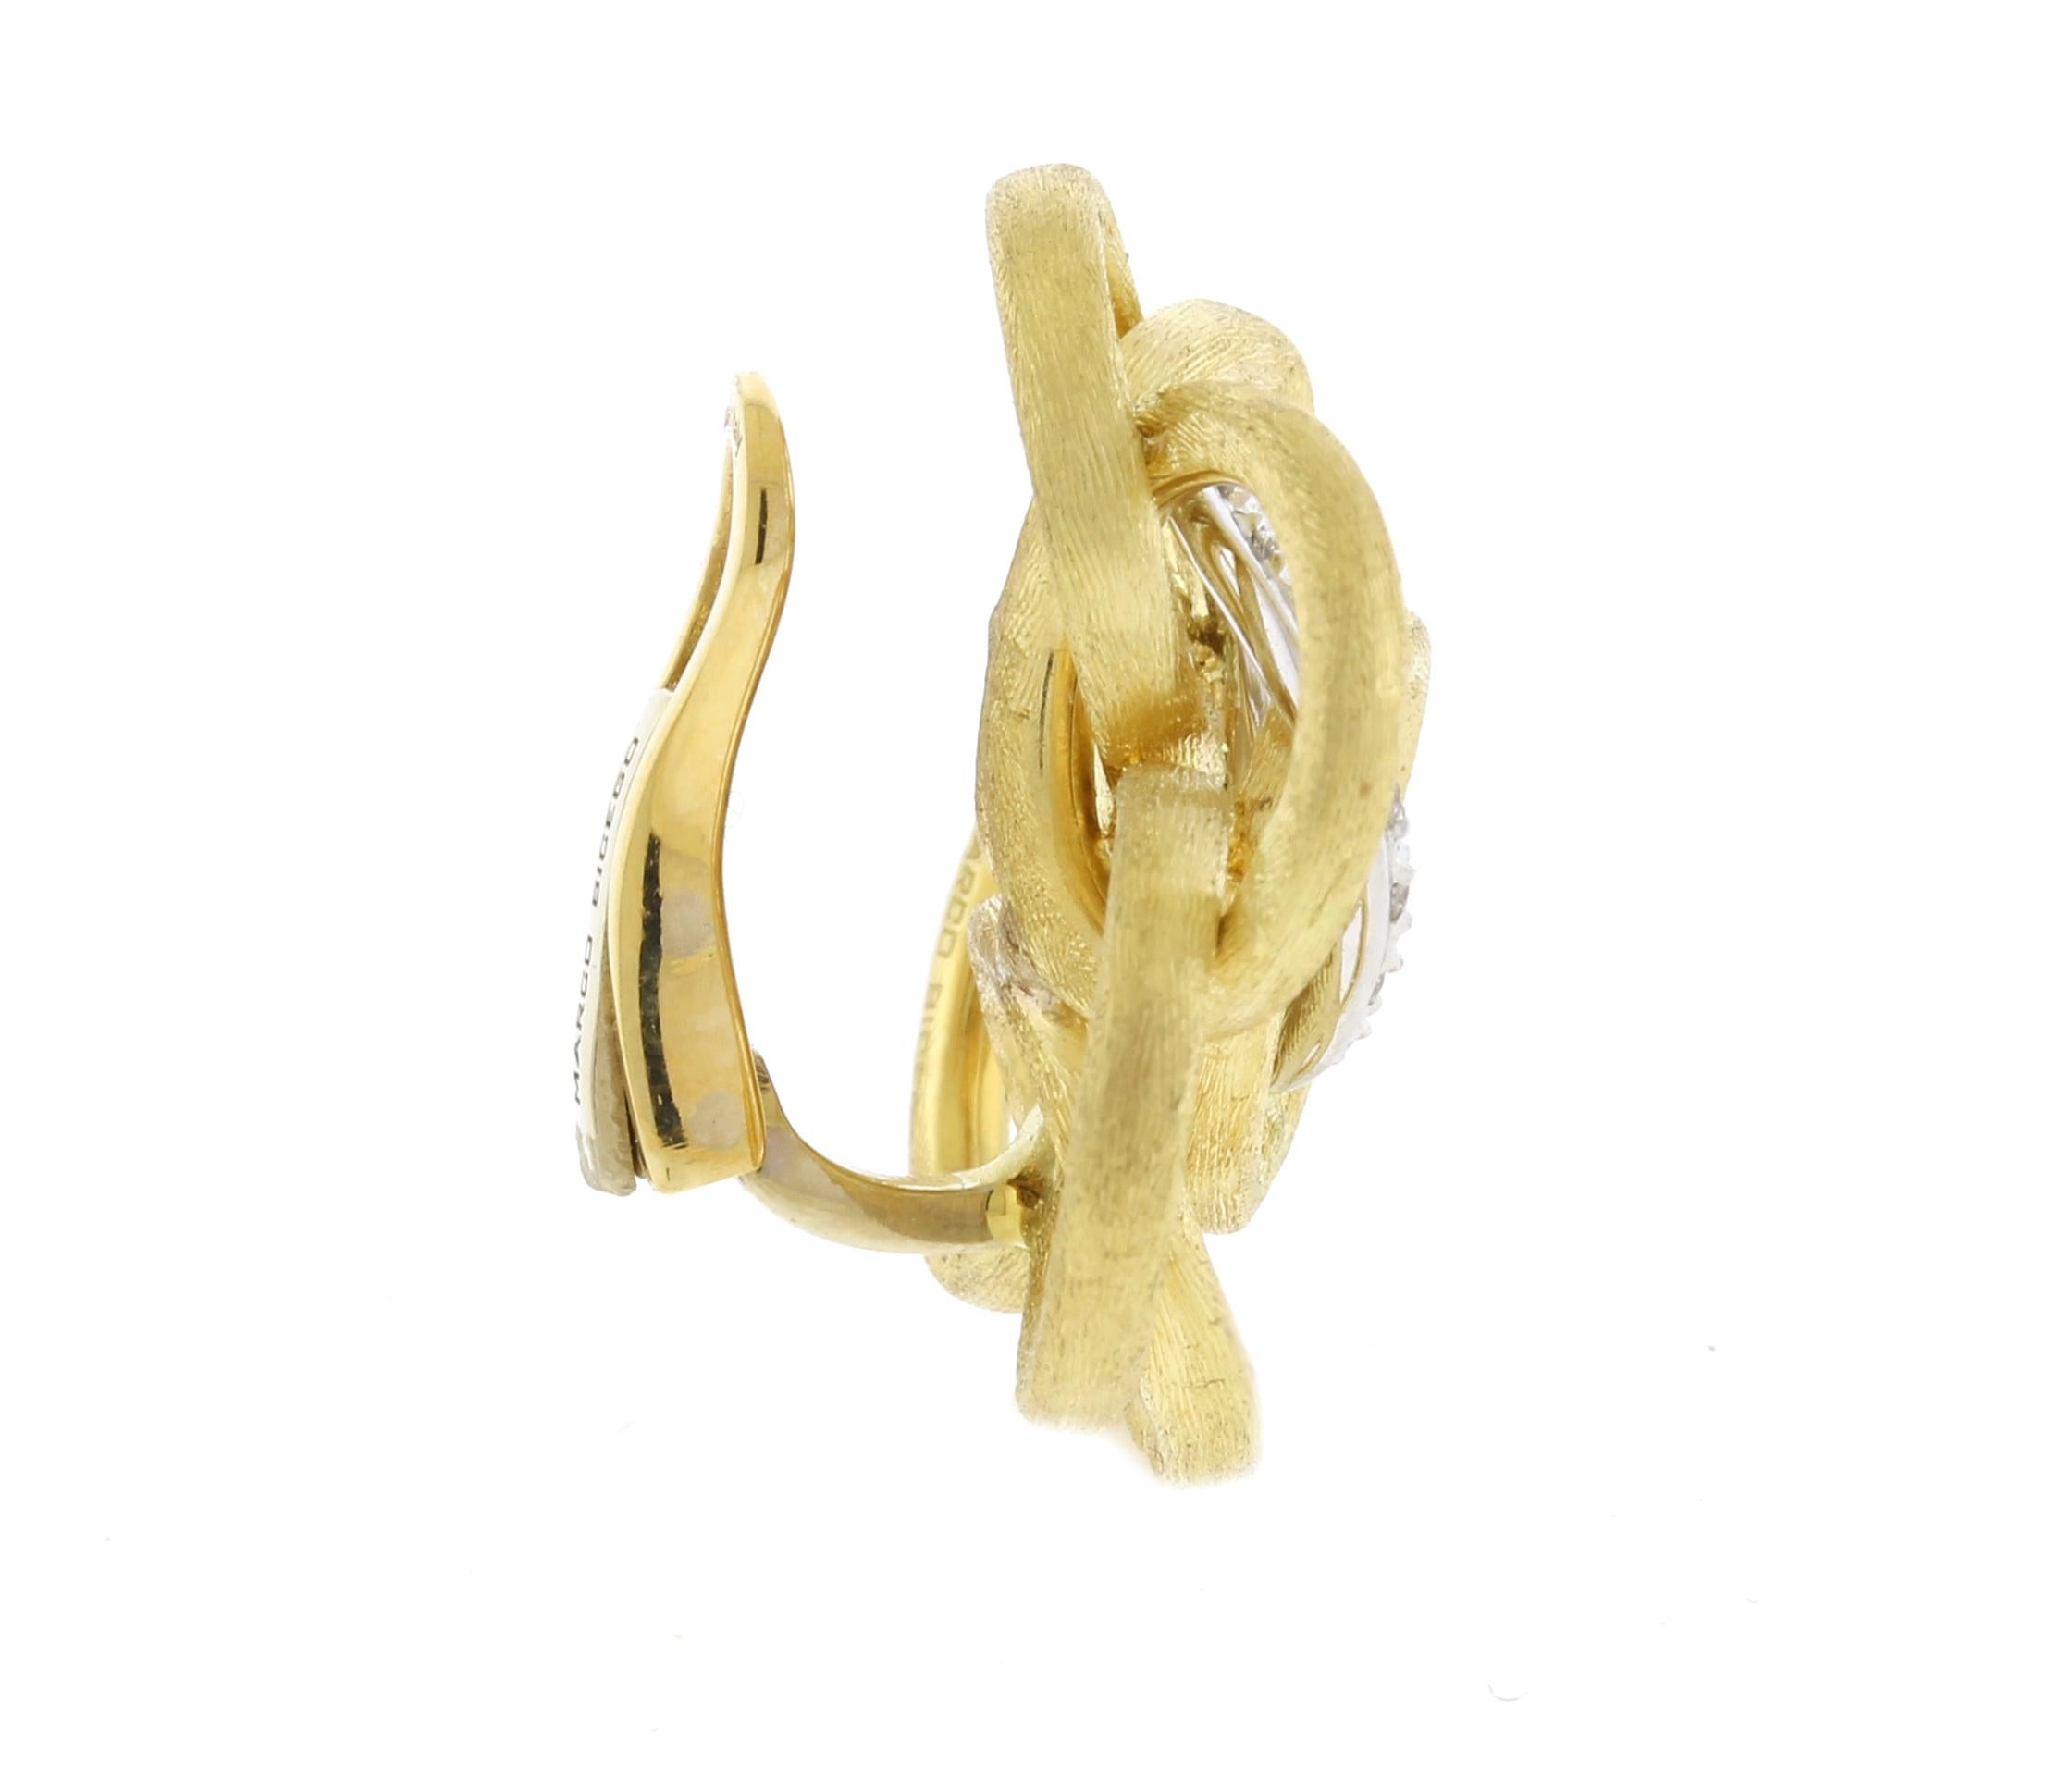 Dans chaque collection de Marco Bicego, l'or est strictement 18 carats, parfaitement sculpté à la main, rendant encore plus belles les formes irrégulières, organiques, naturelles et contemporaines.  Ces boucles d'oreilles sont issues de la